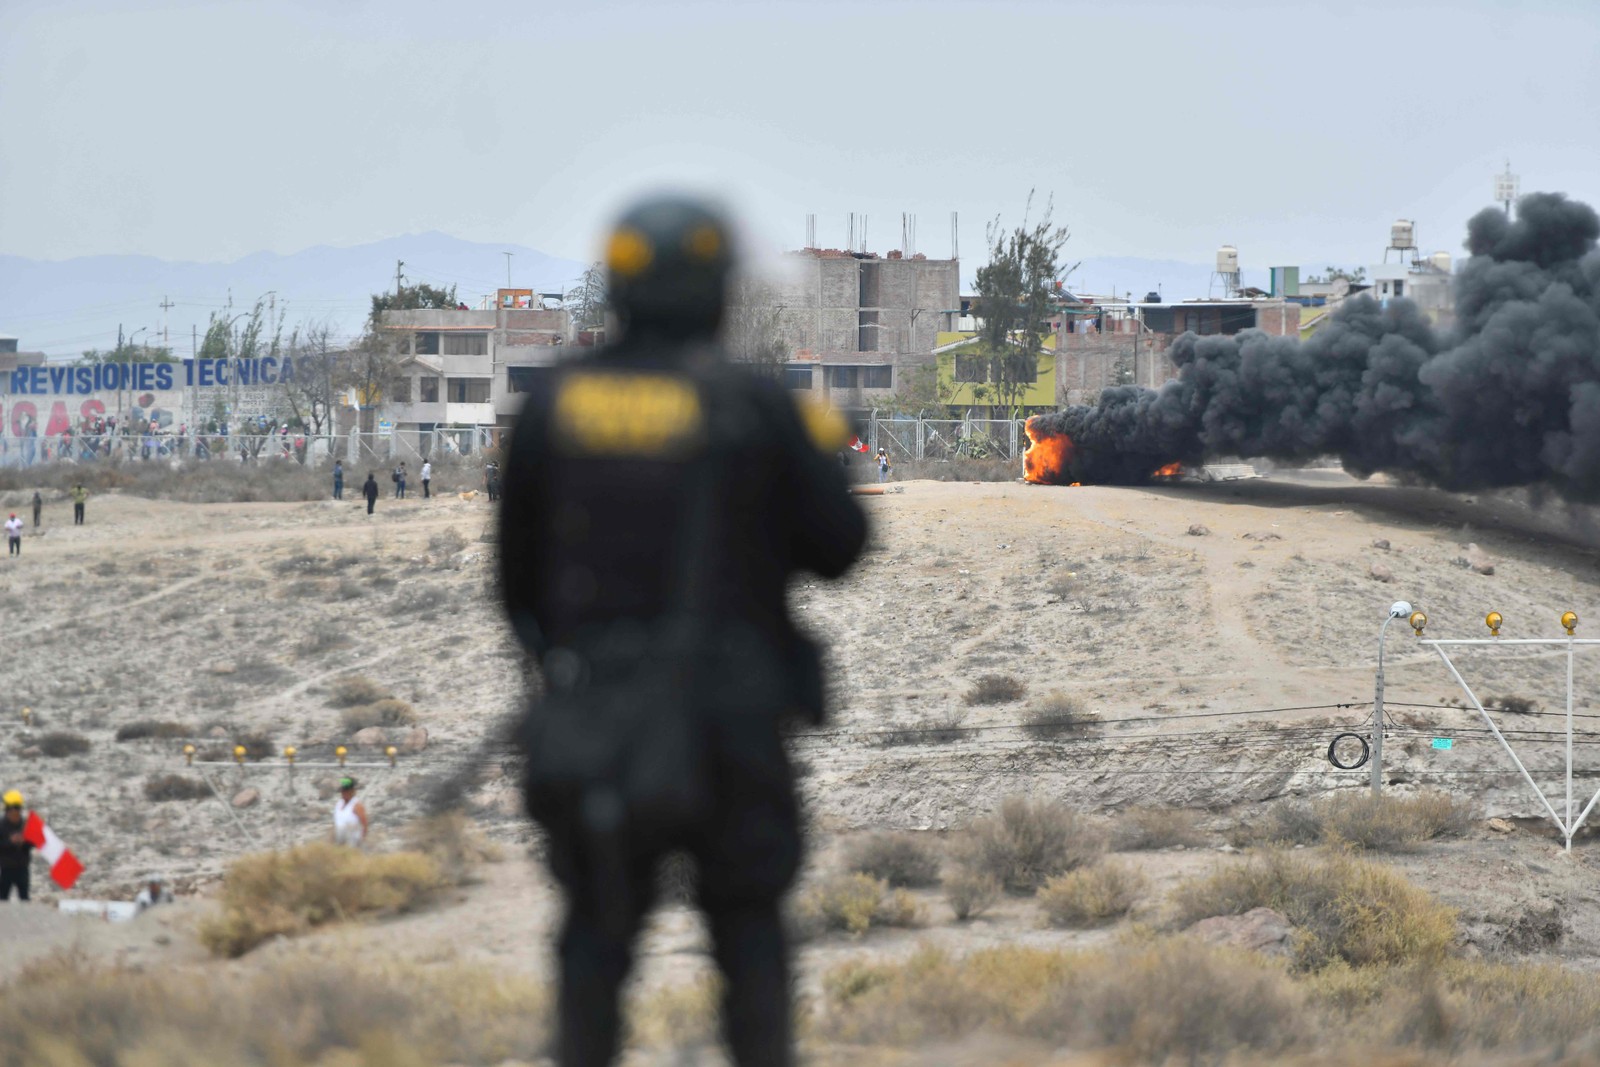 Policial observa incêndio durante manifestação na rodovia pan-americana — Foto: Diego Ramos / AFP